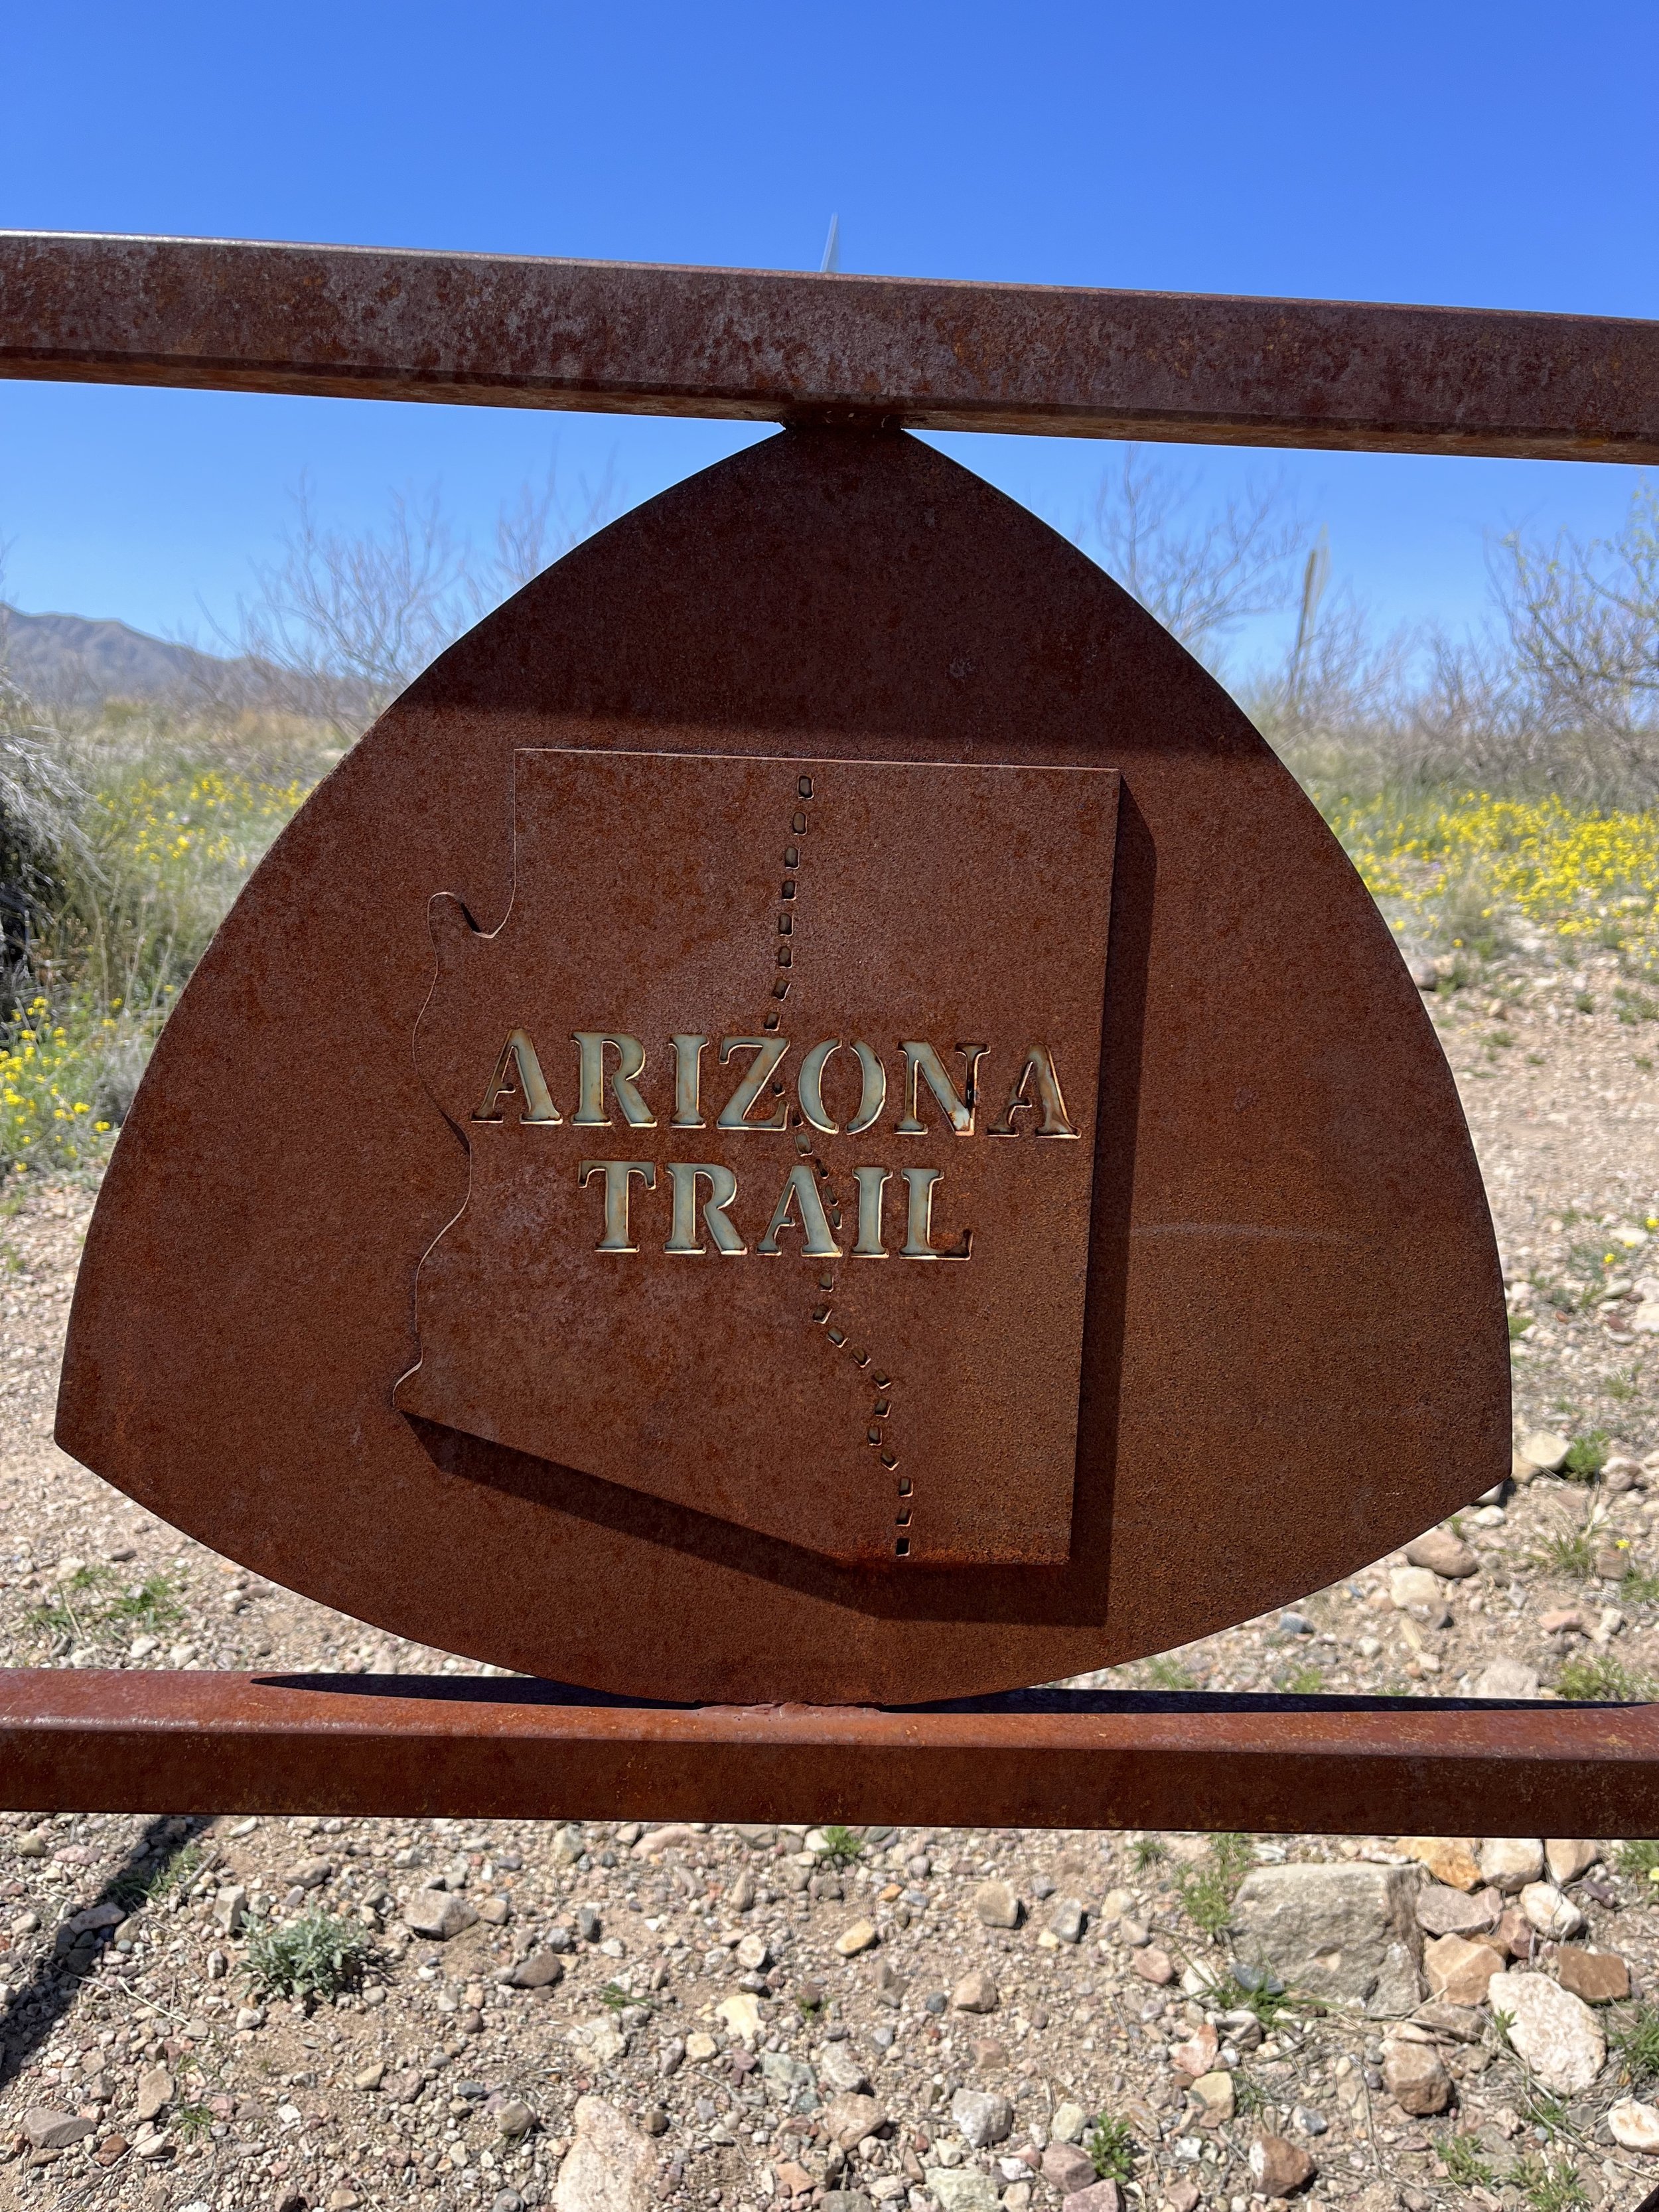 Arizona Trail Passage 7 Three.jpg